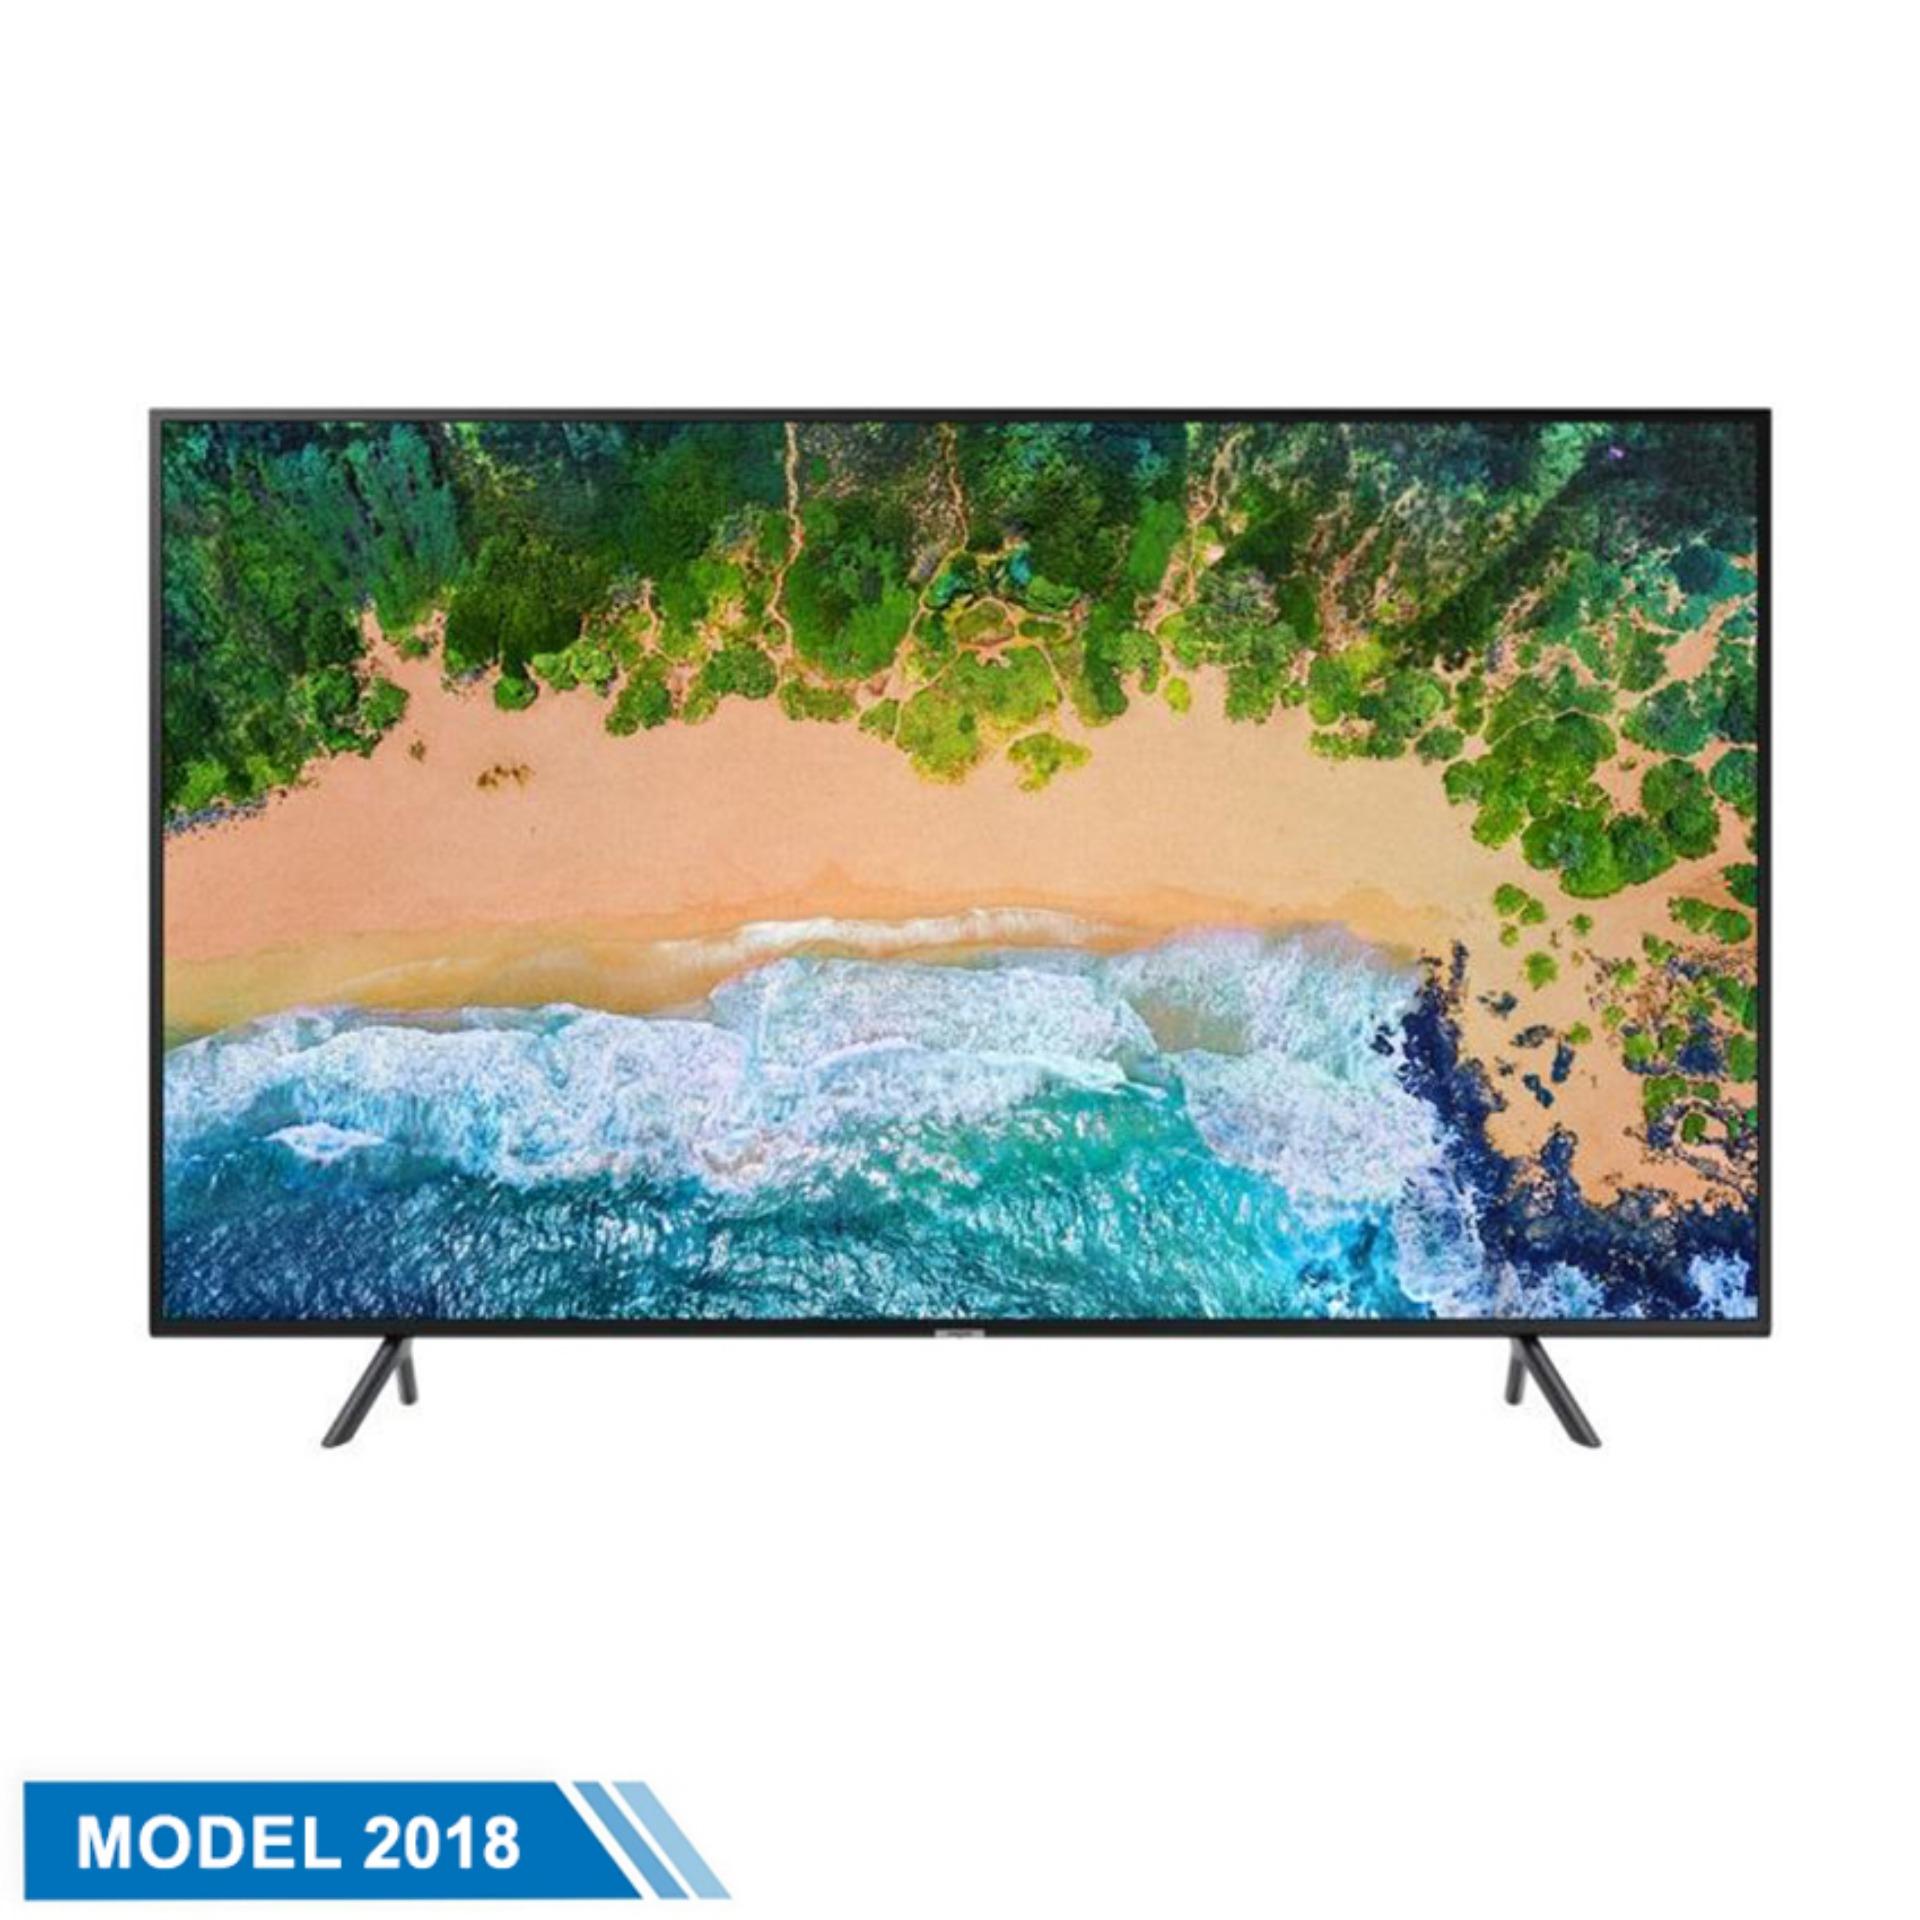 Smart TV Samsung 49inch 4K Ultra HD - Model UA49NU7100KXXV (Đen) - Hãng phân phối chính thức